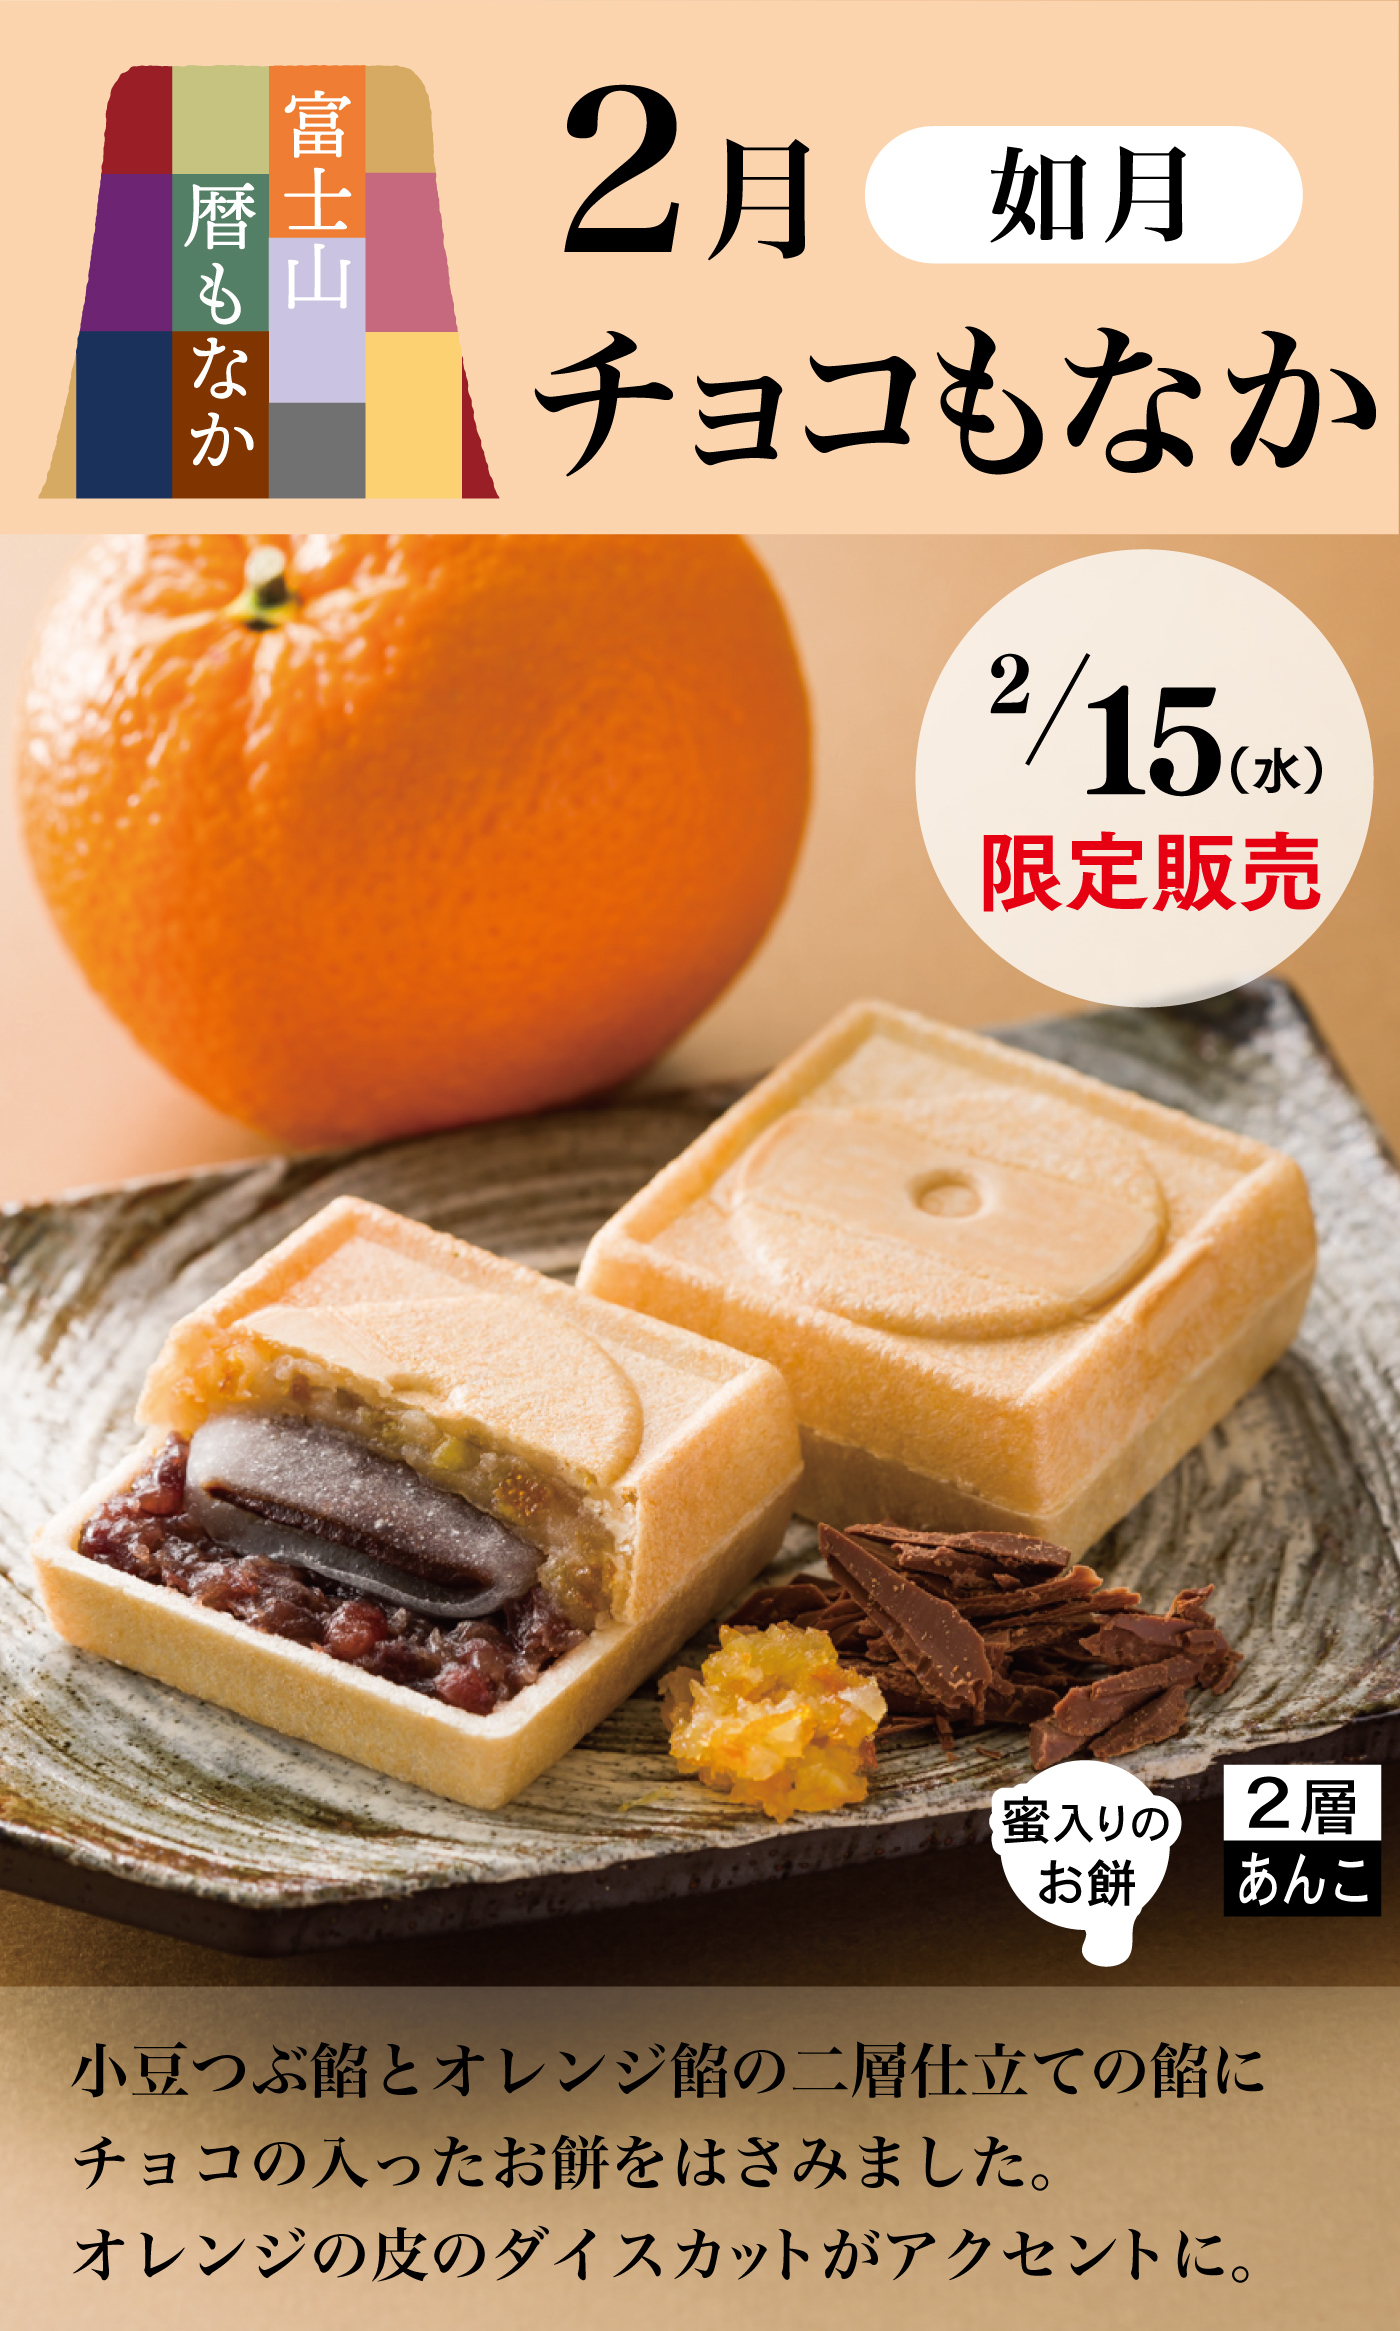 富士山暦もなか2月如月チョコもなか2/15水限定販売小豆つぶ餡とオレンジ餡の二層仕立ての餡にチョコの入ったお餅をはさみました。オレンジの皮のダイスカットがアクセントに。